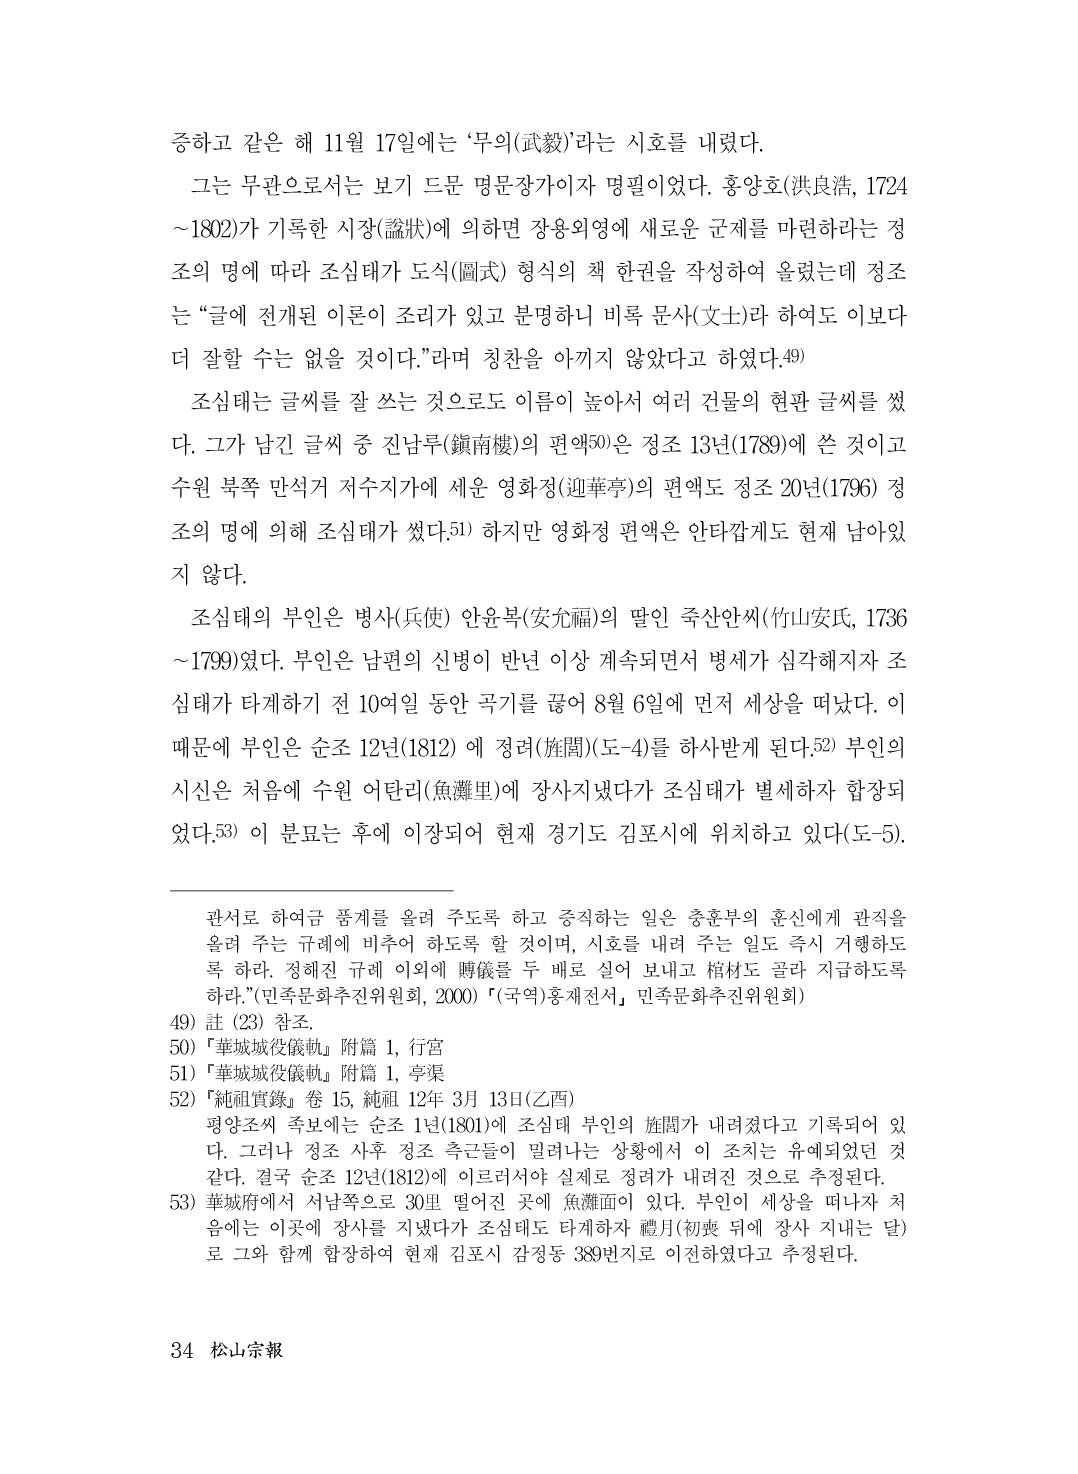 (전체) 송산종보(27호)(최종)_35.jpg